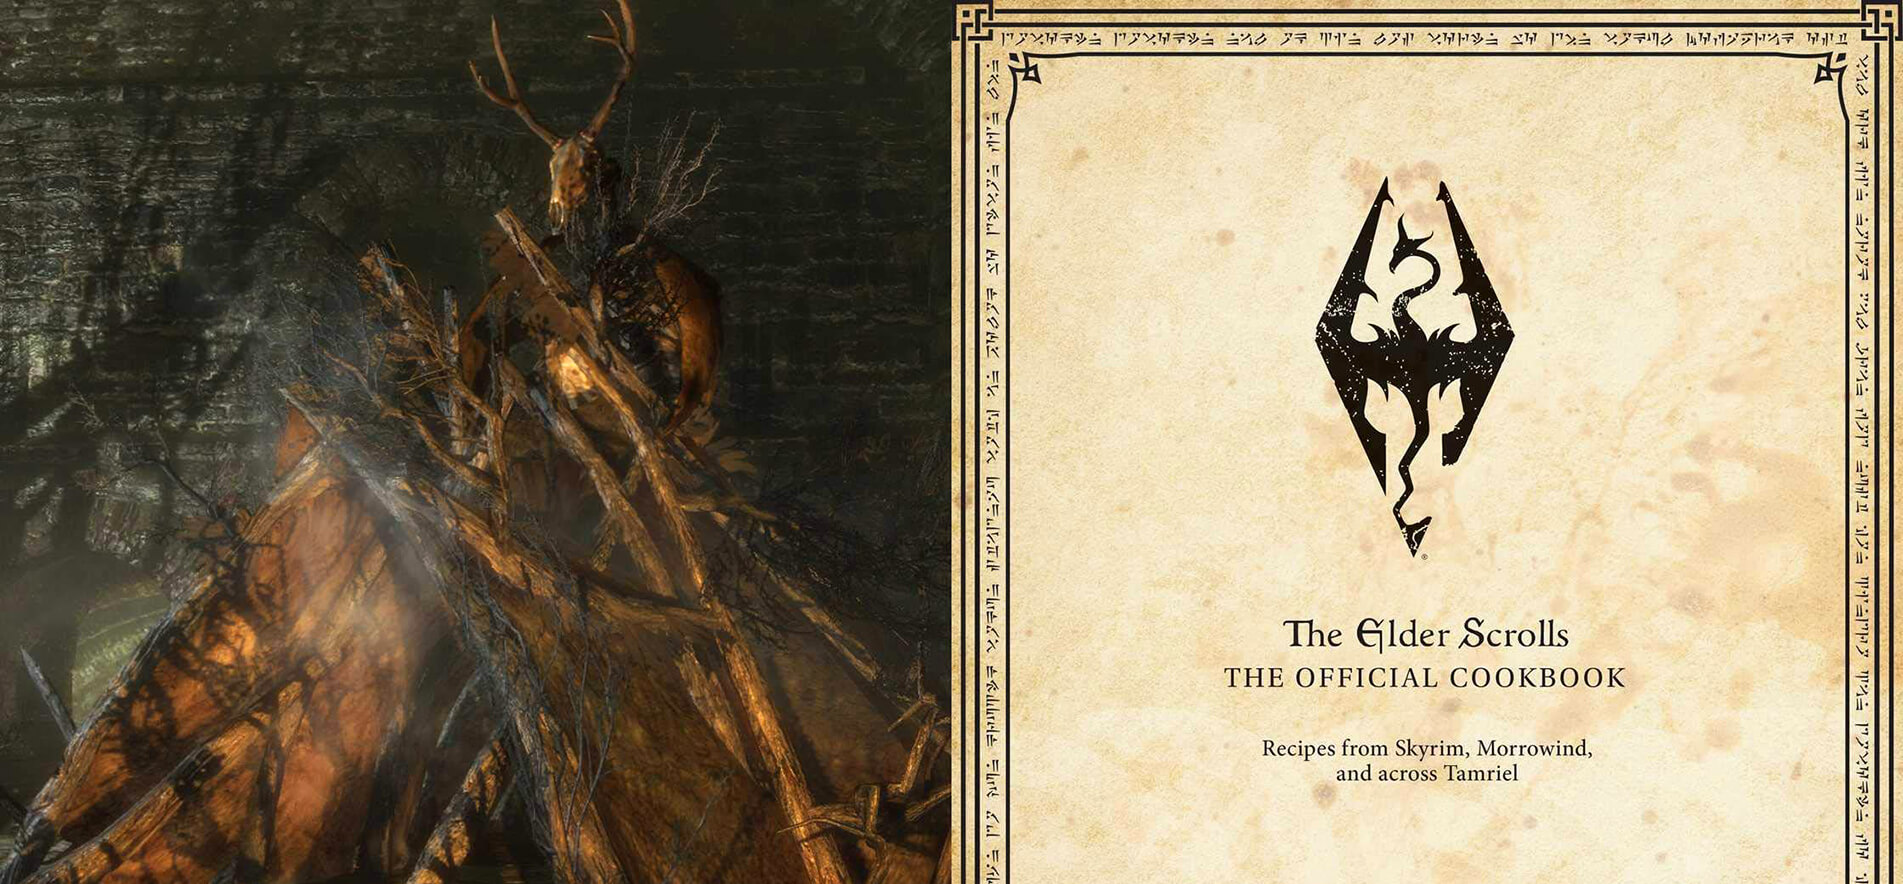 Кулинарная книга The Elder Scrolls выйдет в 2019 году (фото)